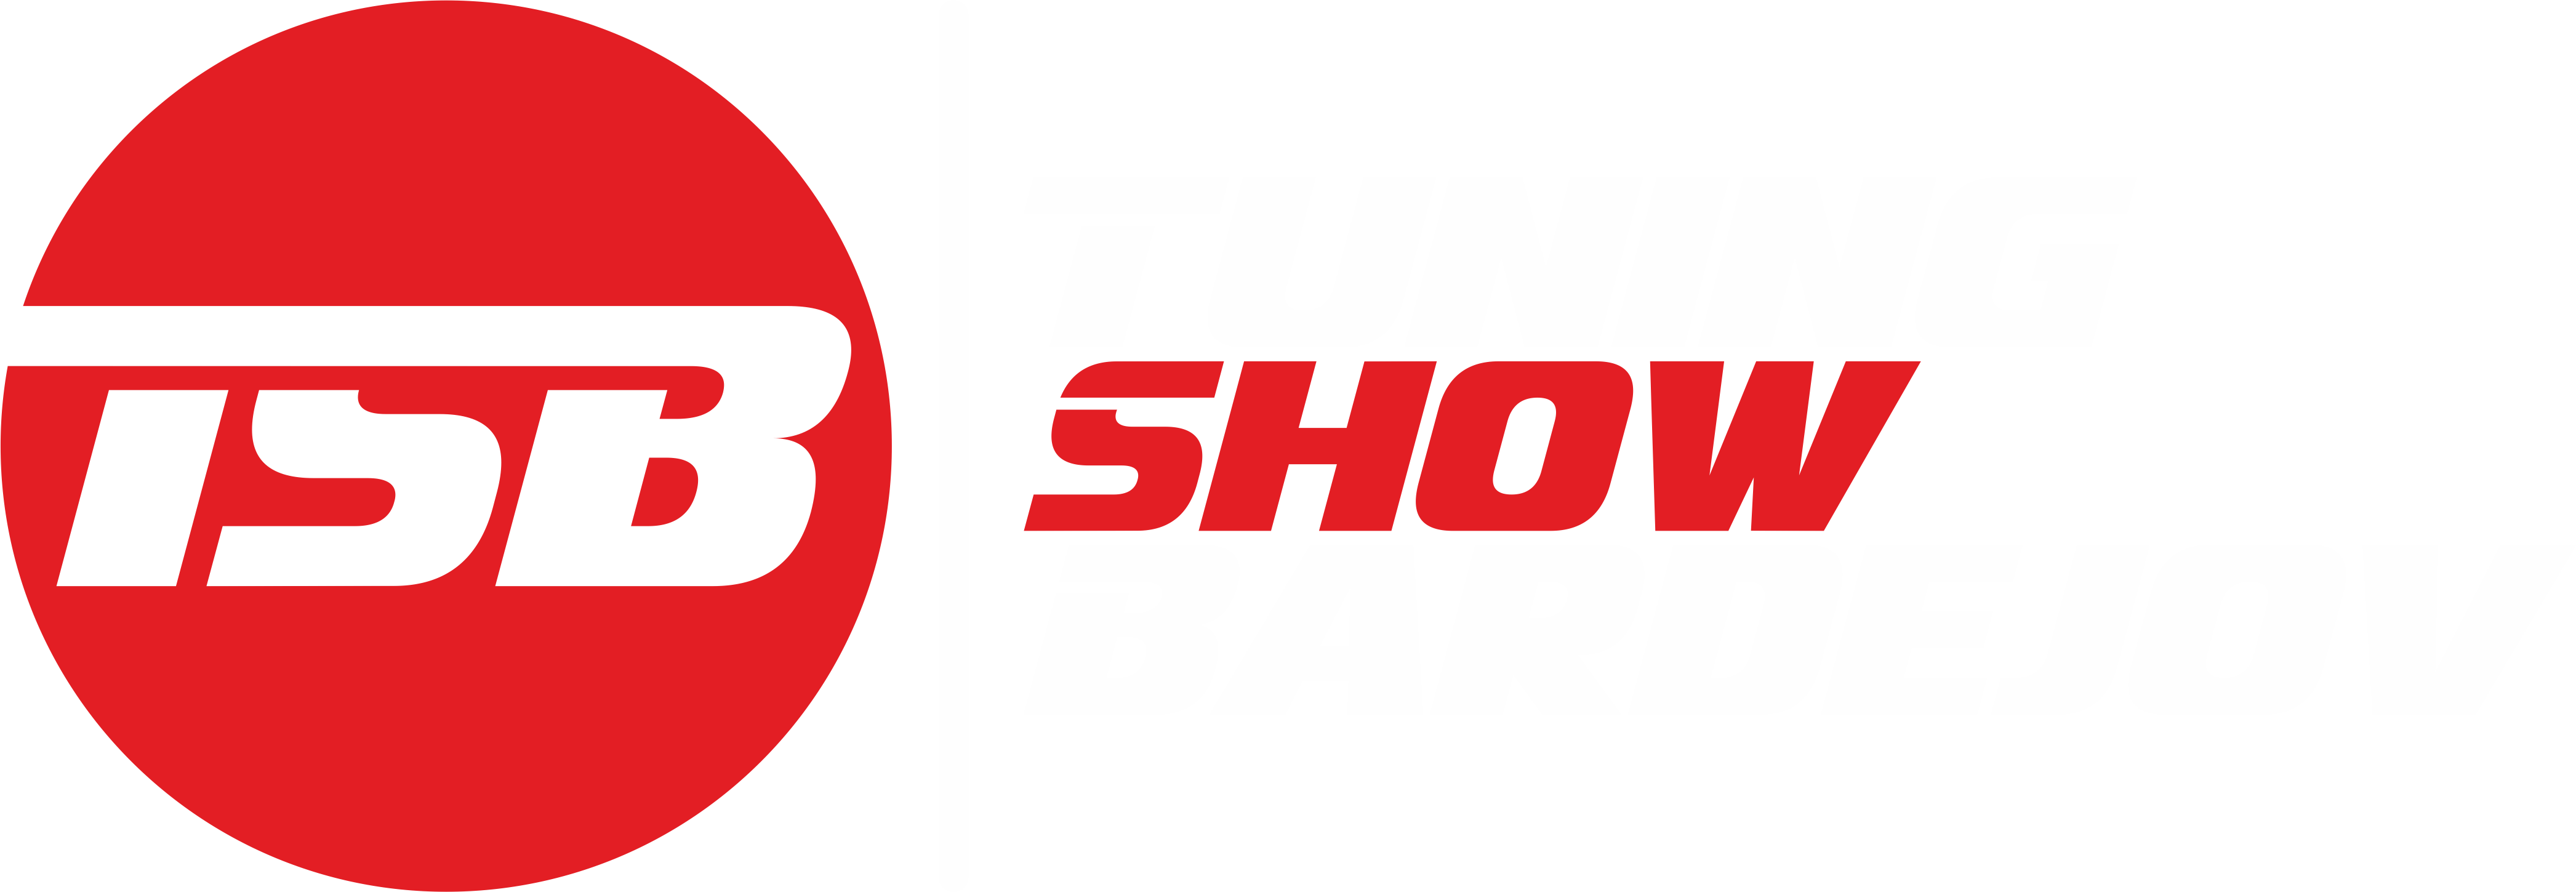 tuning-logo